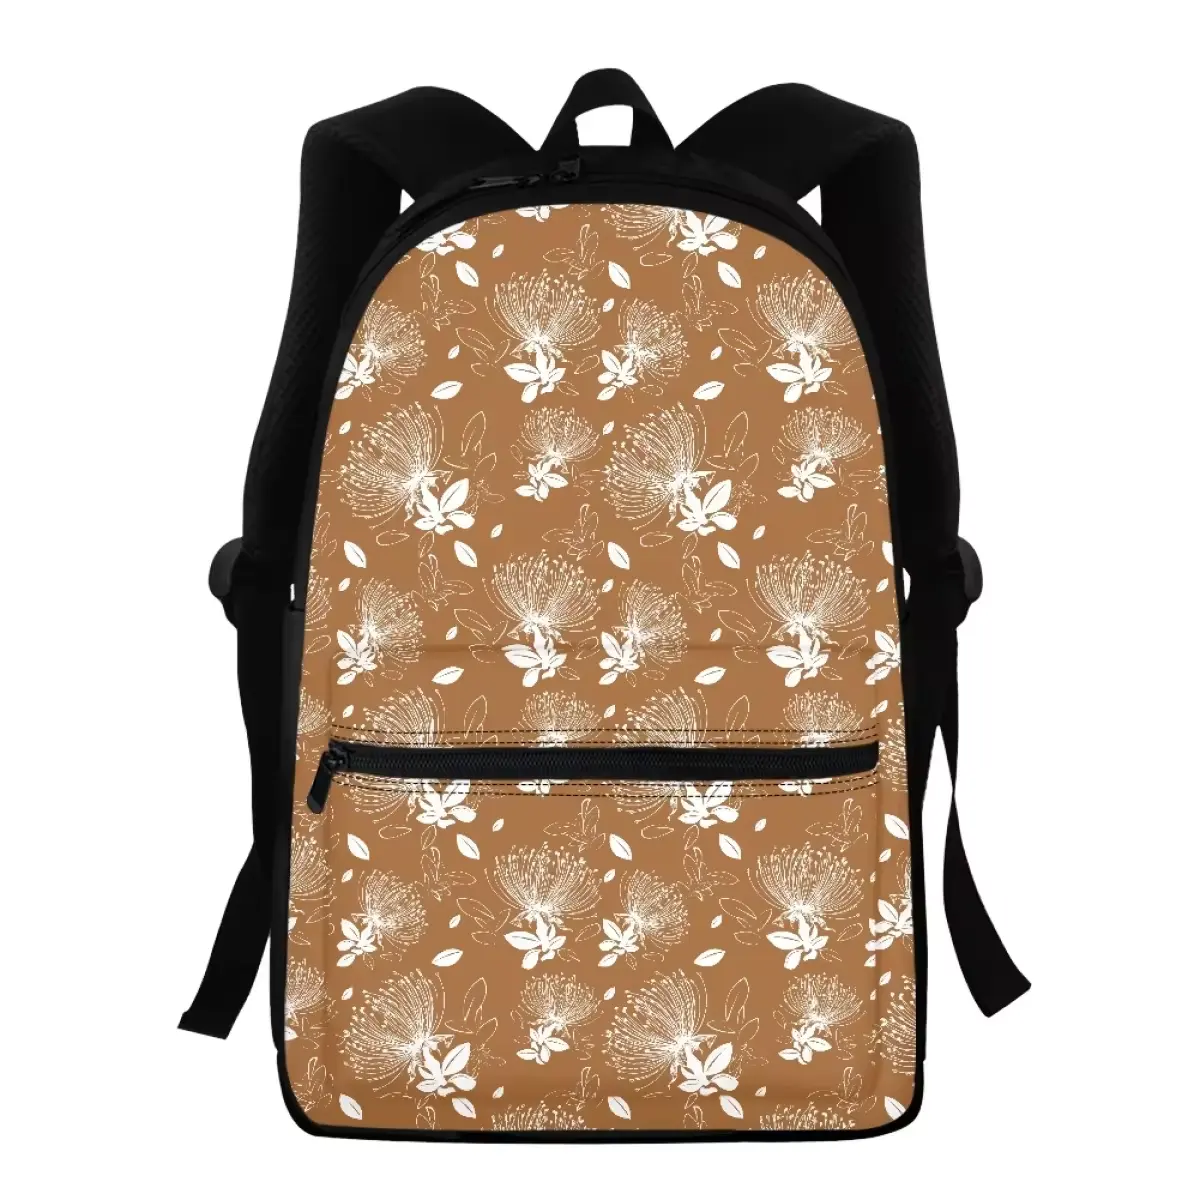 Сумки для путешествий премиум сумки оптовая продажа спортивная сумка модная классическая стильная оптовая продажа с логотипом на заказ